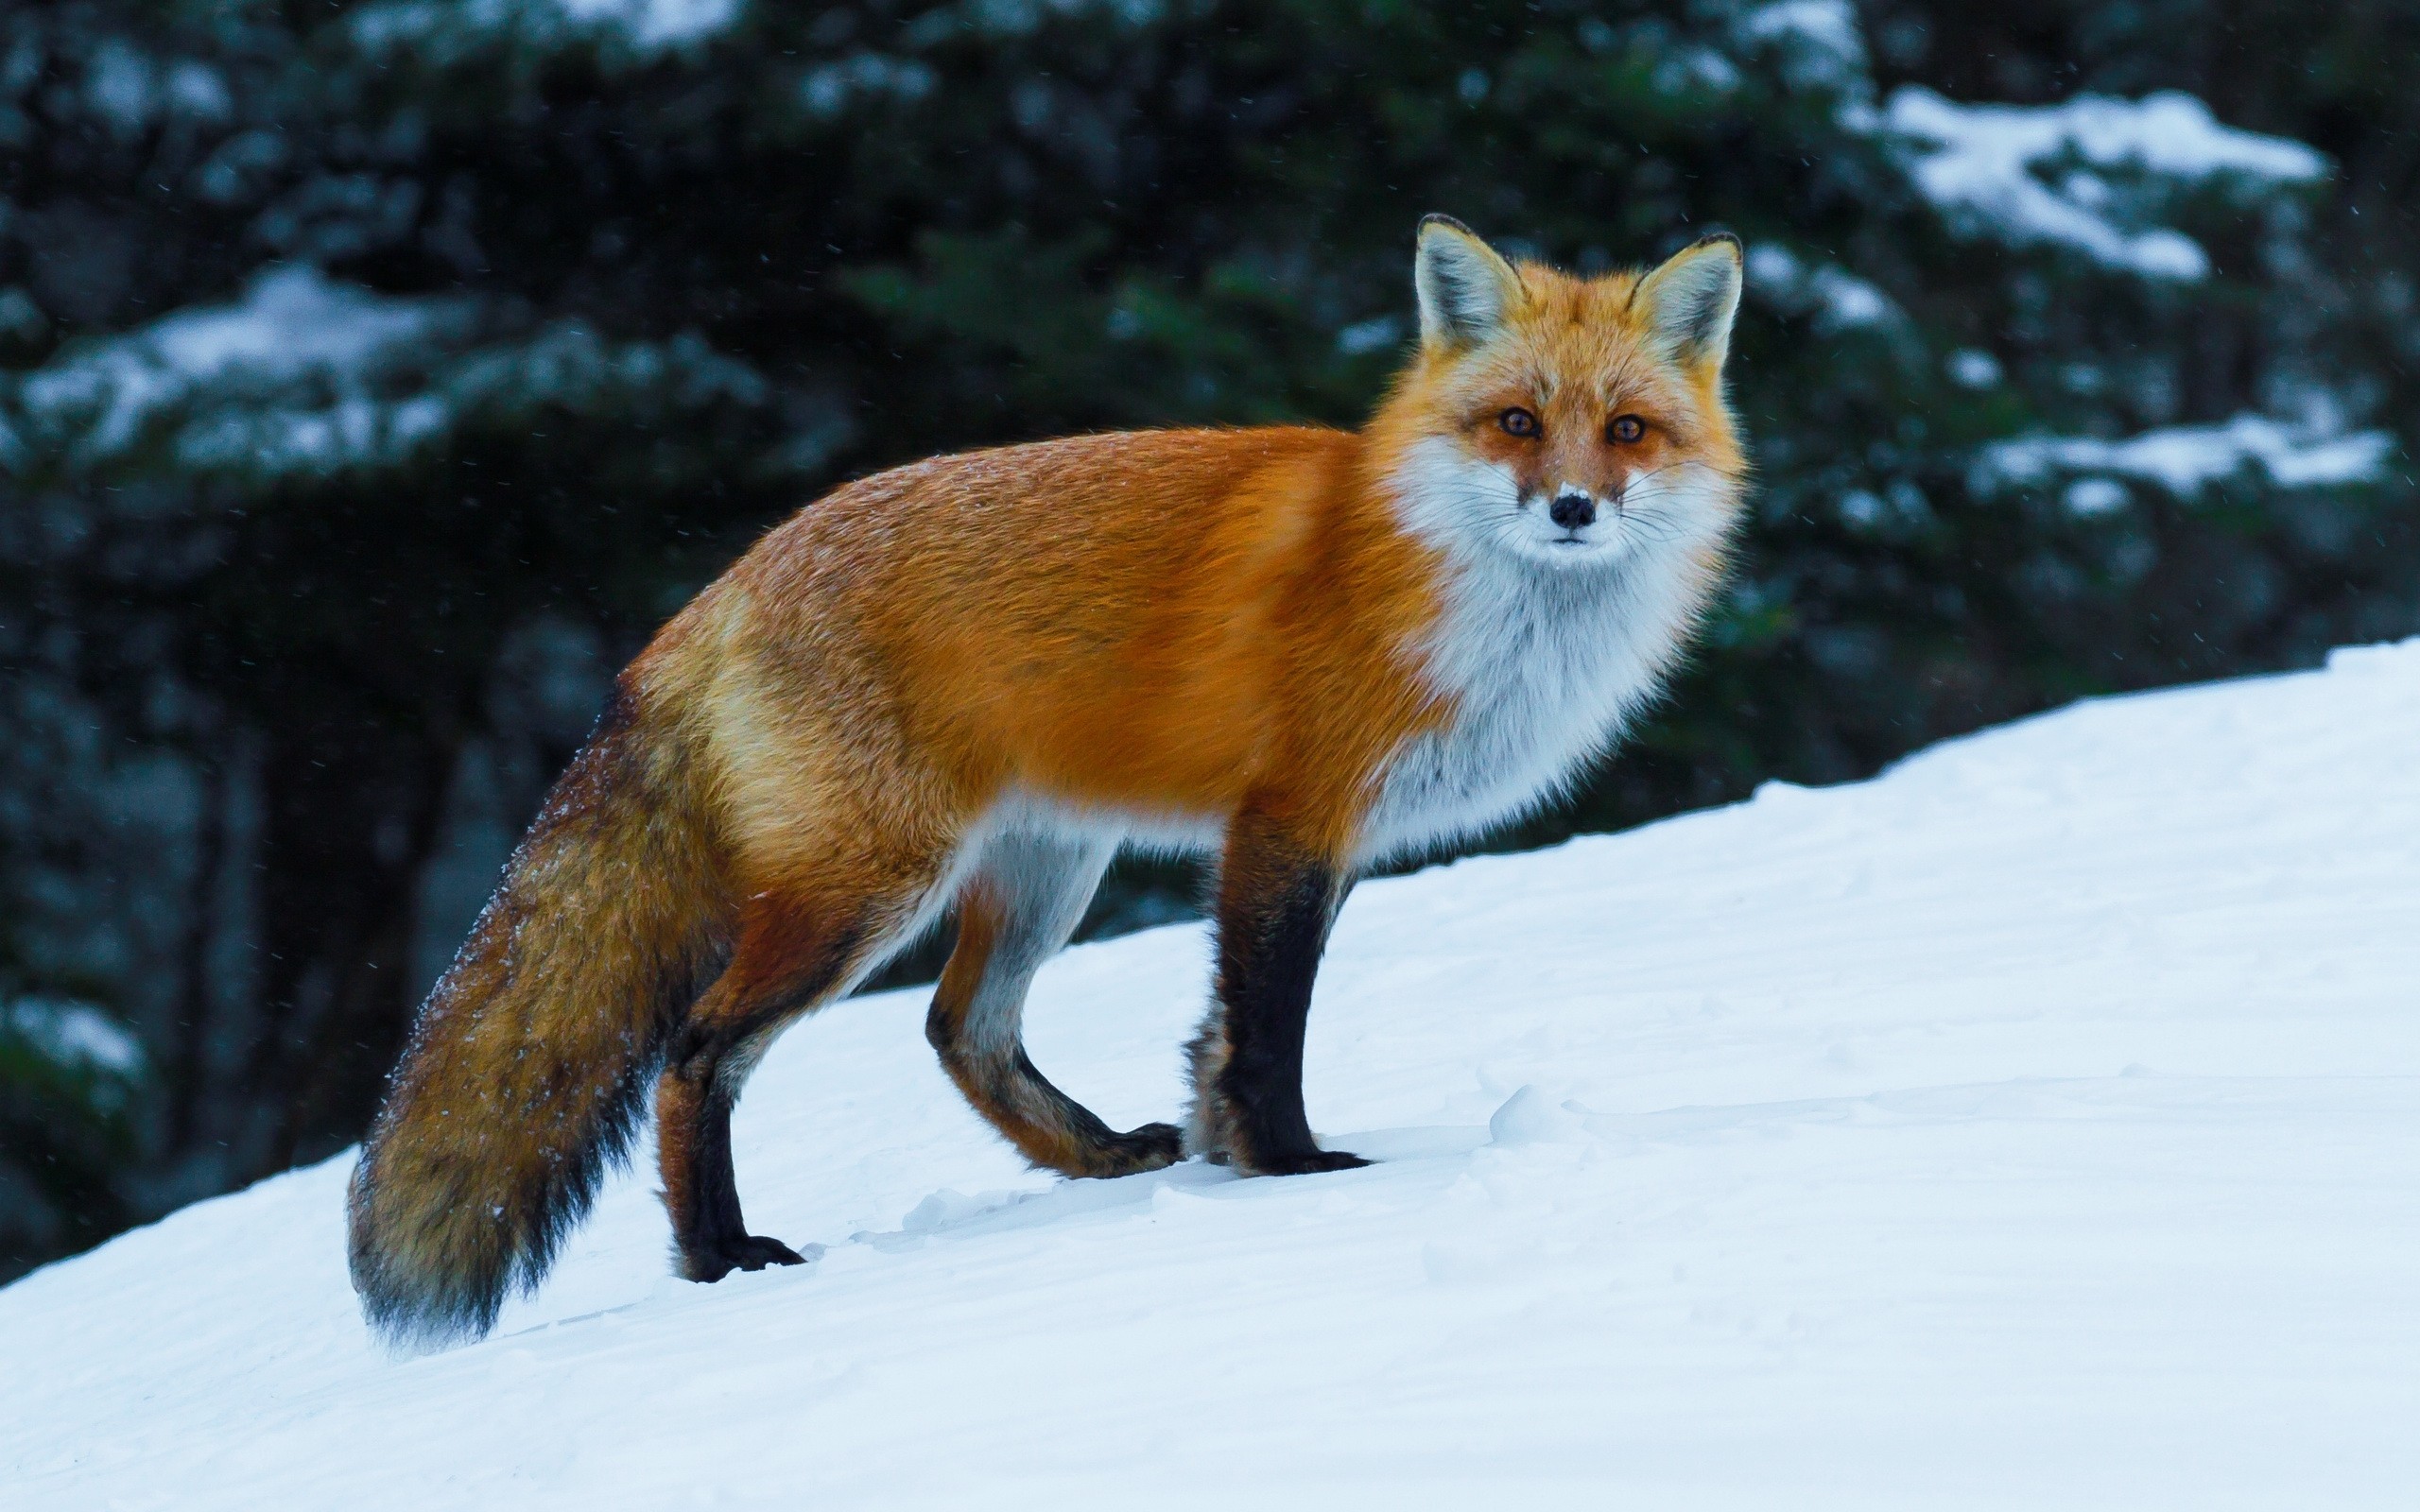 General 2560x1600 animals nature fox wildlife snow mammals winter